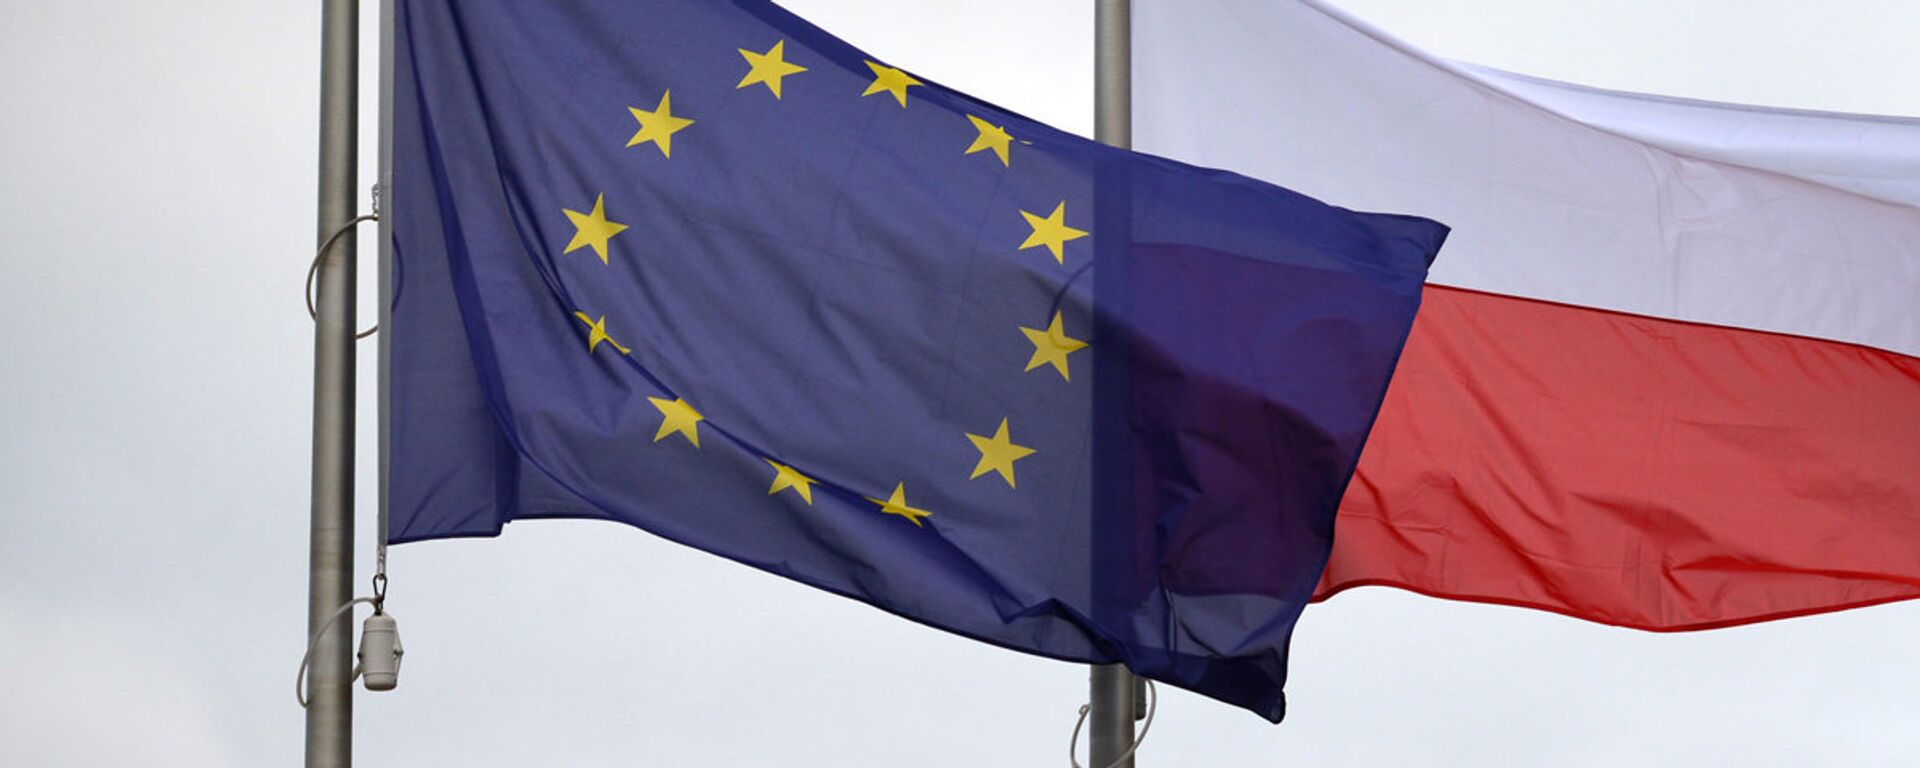 Флаги Евросоюза и Польши - Sputnik Latvija, 1920, 04.03.2021